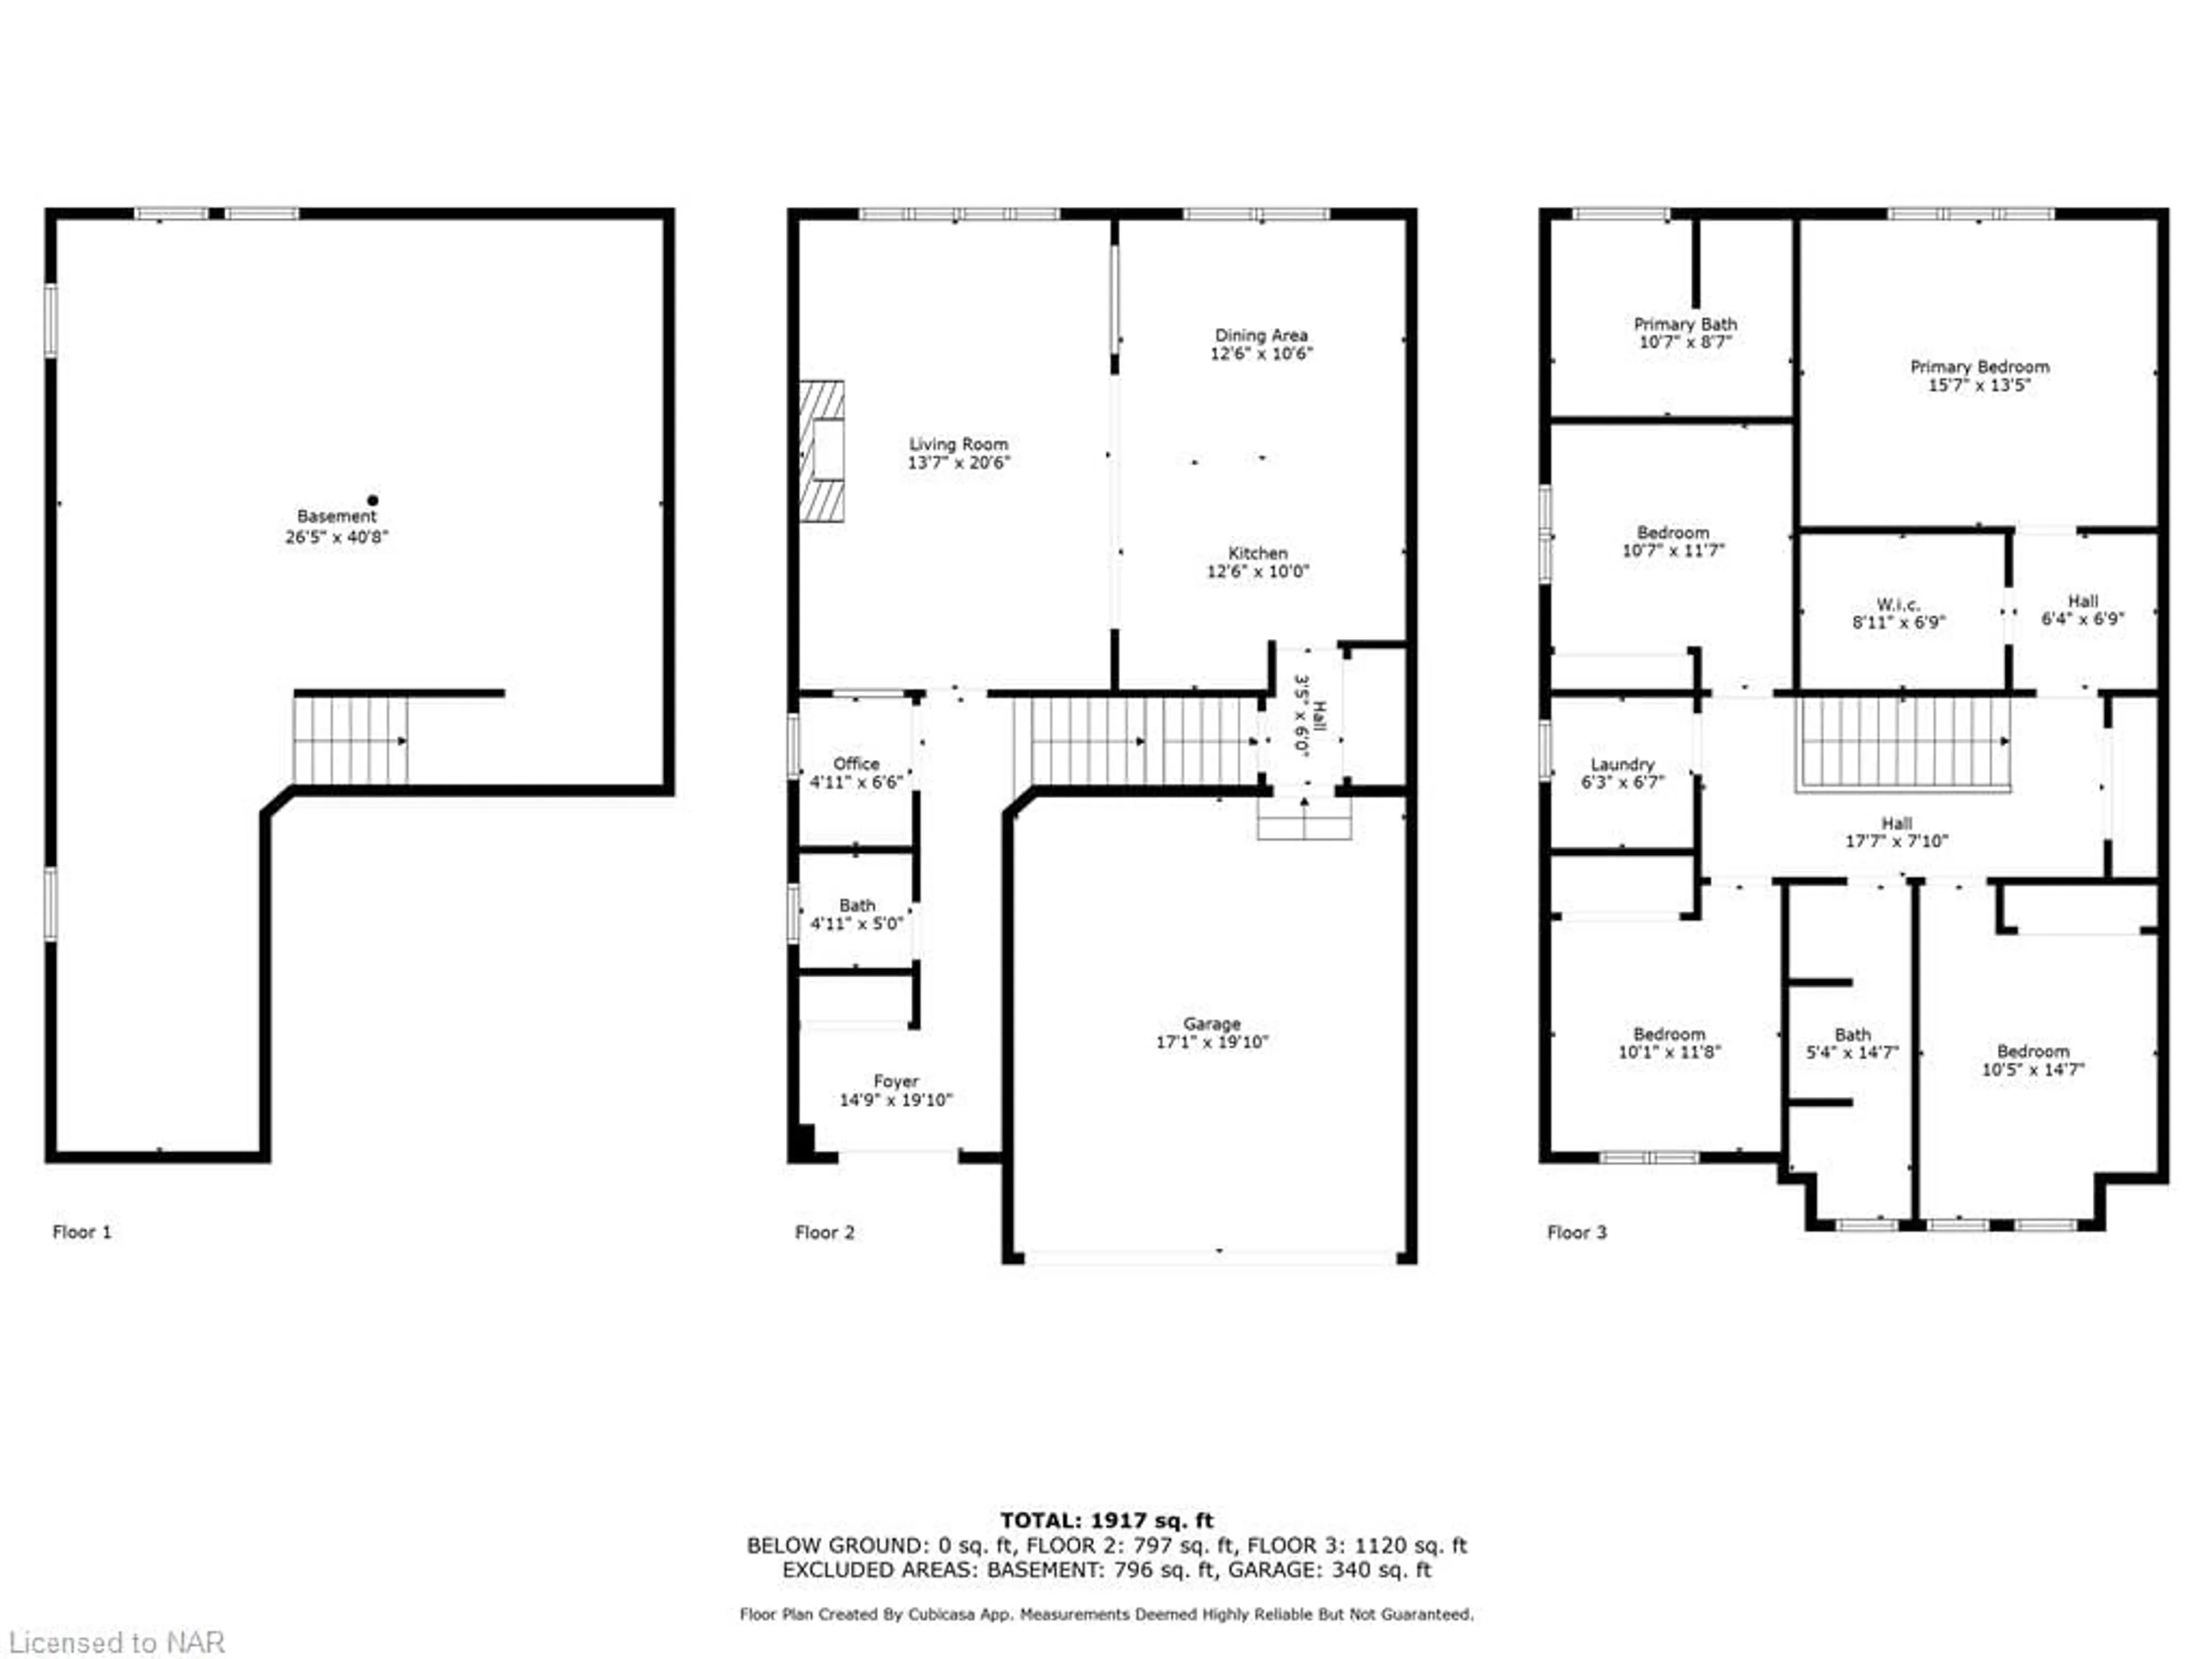 Floor plan for 8663 Pawpaw Lane Lane, Niagara Falls Ontario L2H 3S5